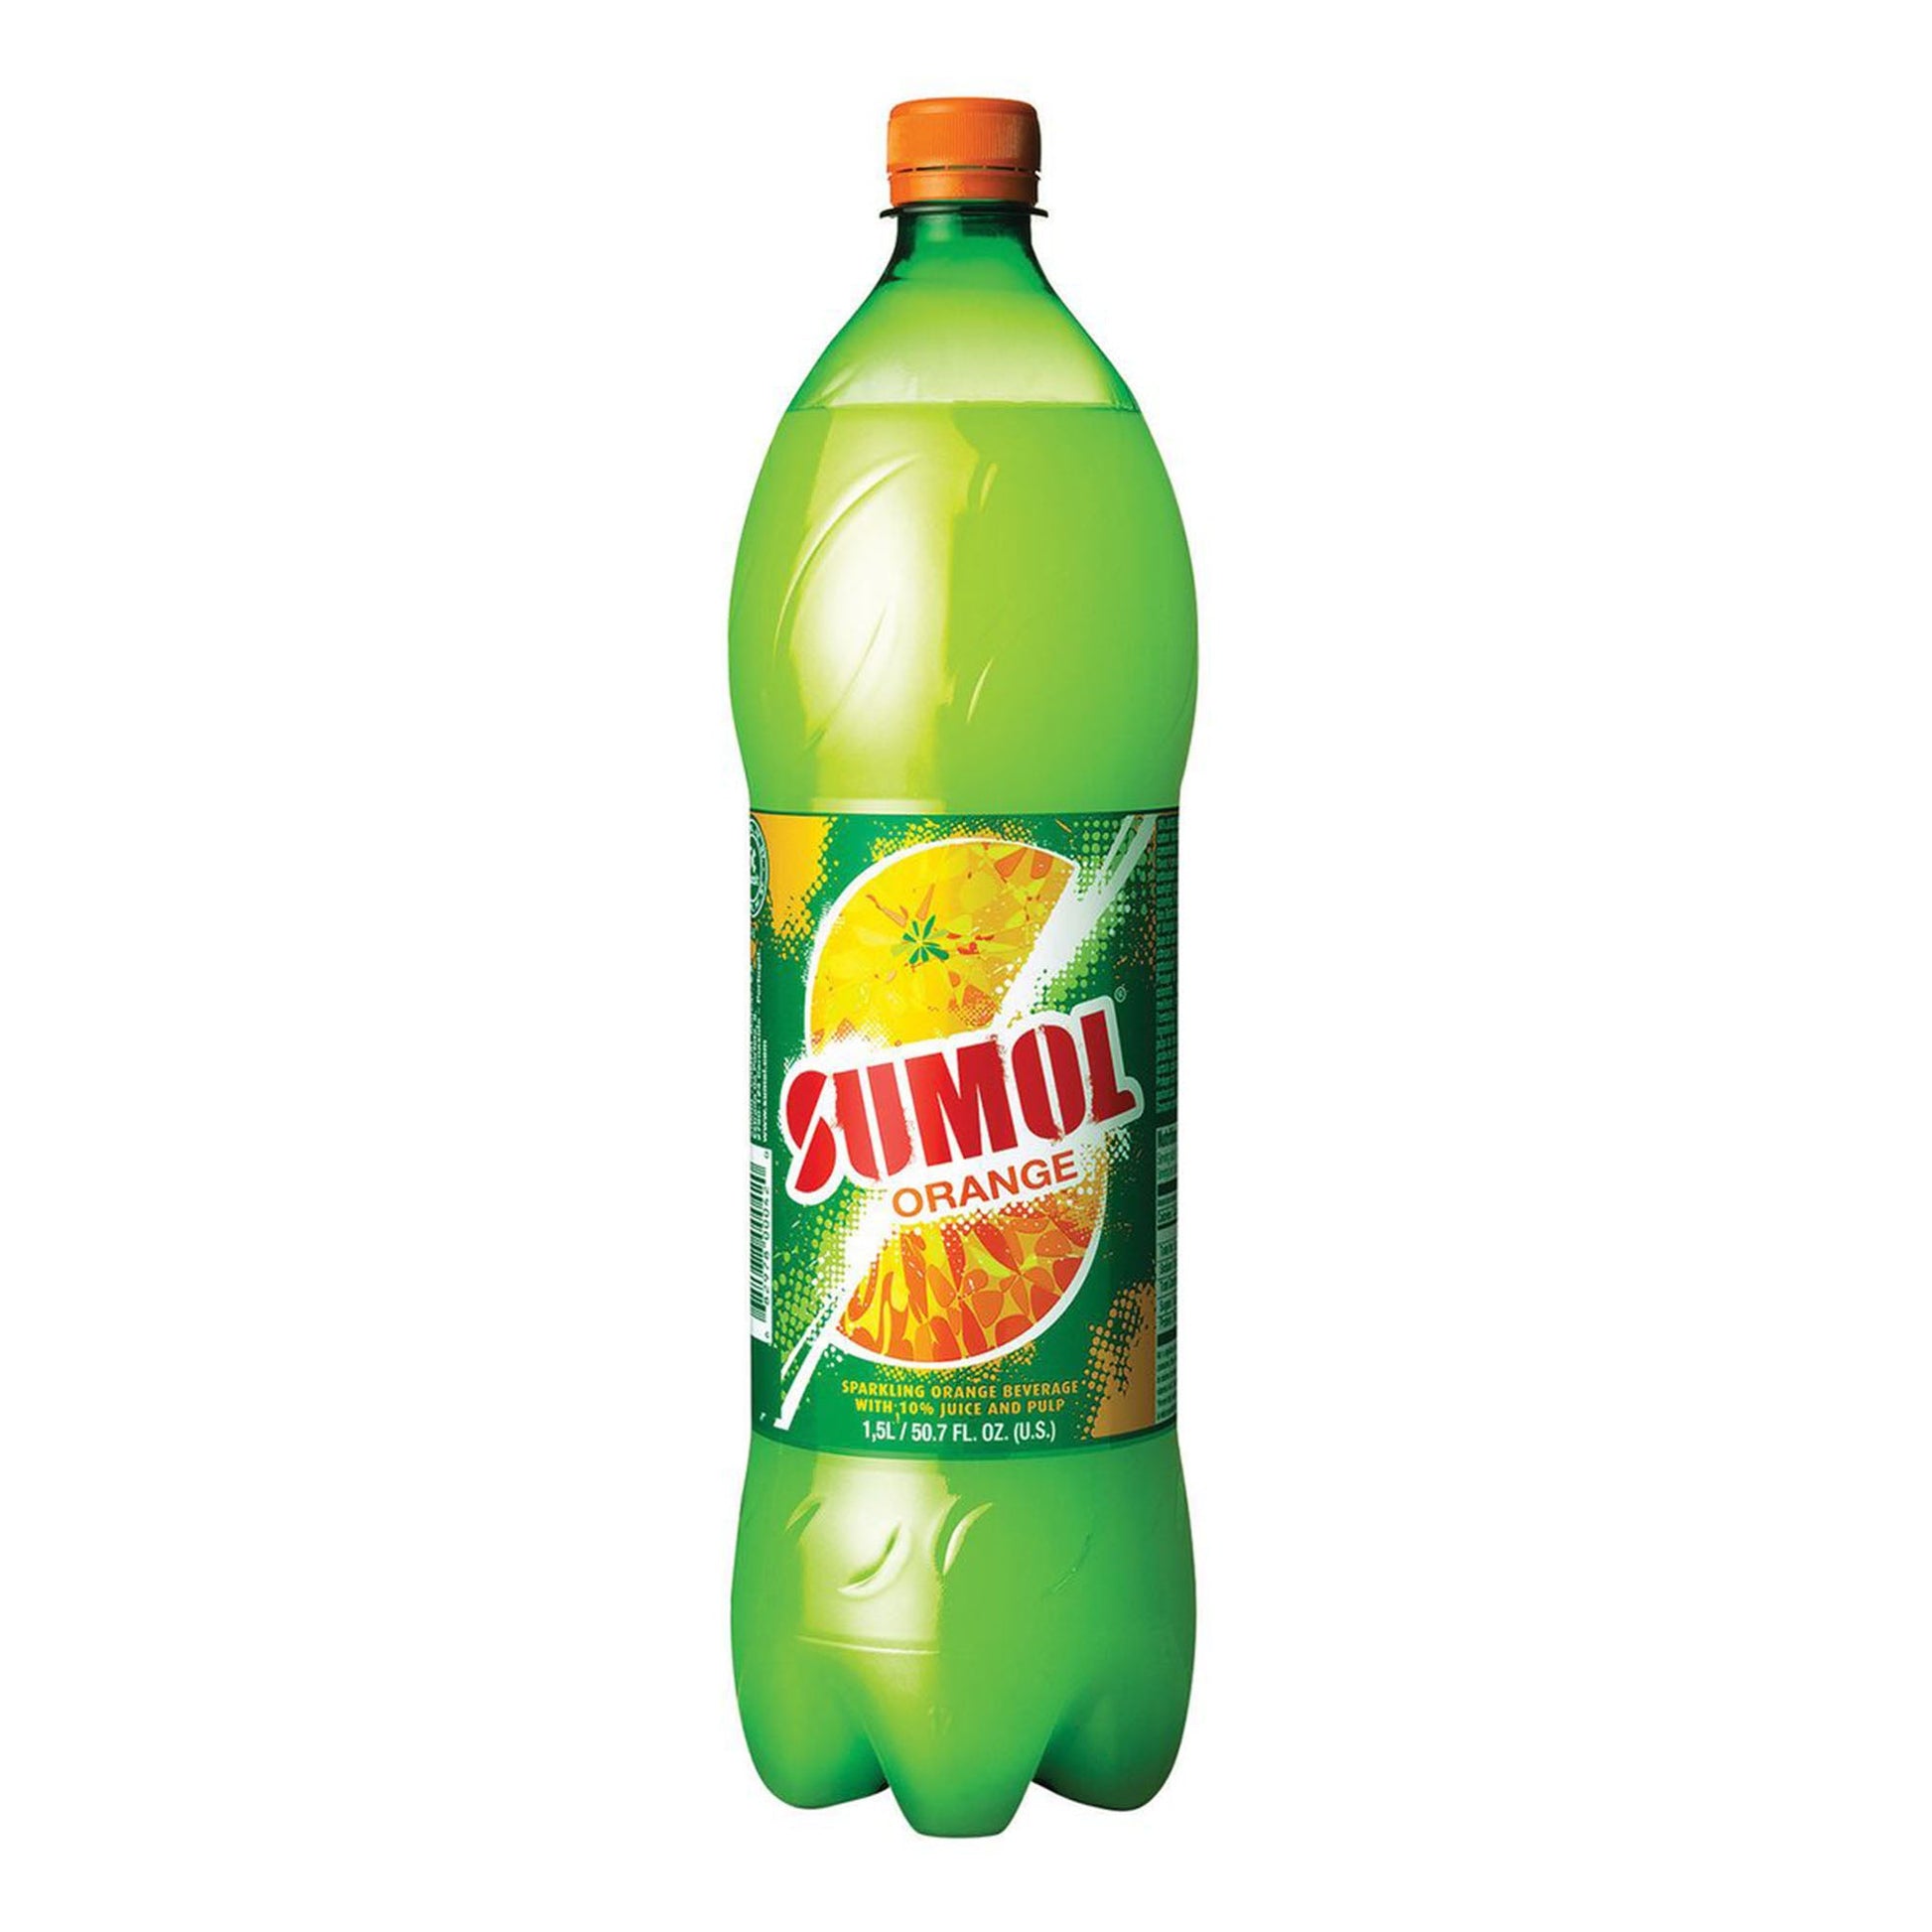 Sumol Orange Drink 1.5L